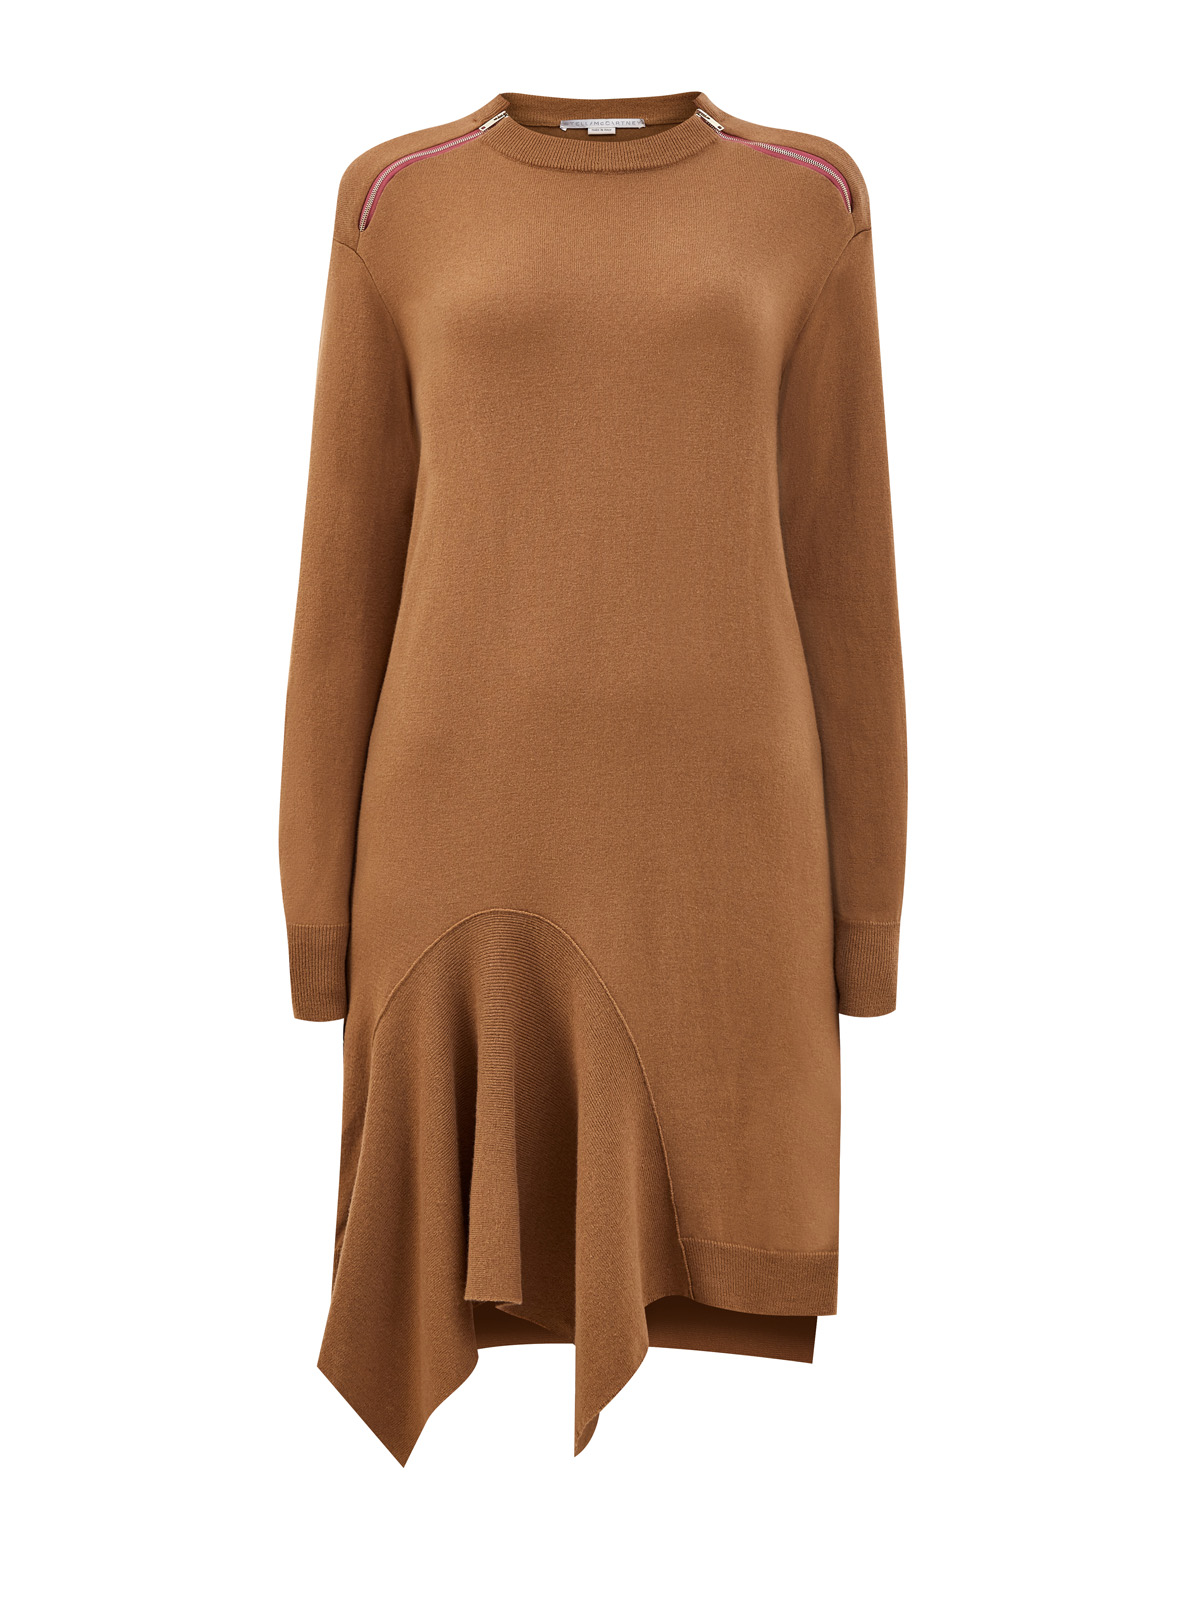 Асимметричное платье-миди из тонкой шерстяной пряжи STELLA McCARTNEY коричневого цвета